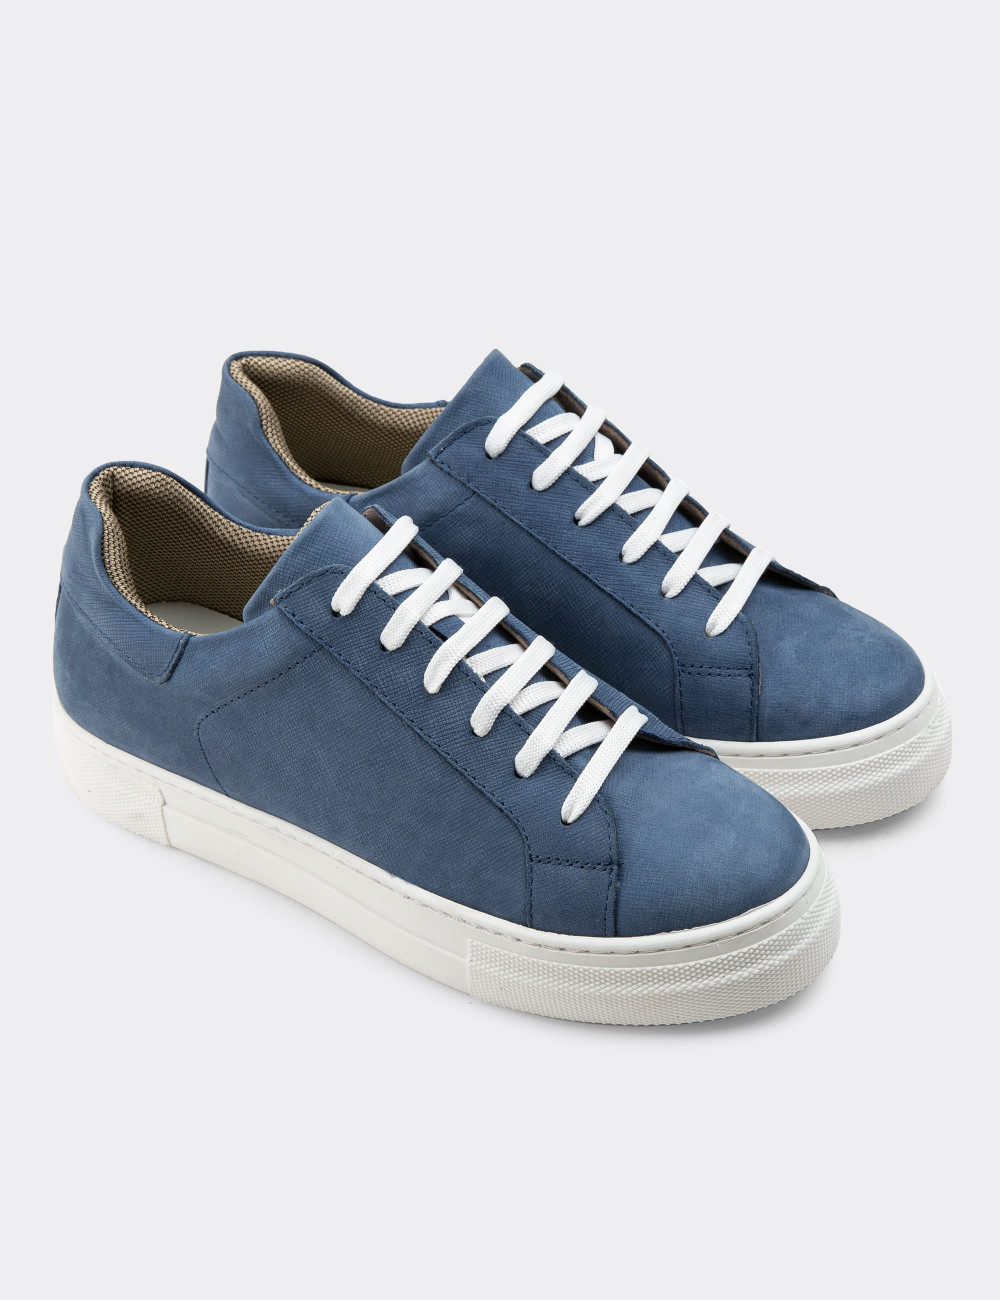 Hakiki Nubuk Mavi Sneaker Kadın Ayakkabı - Z1681ZMVIC03